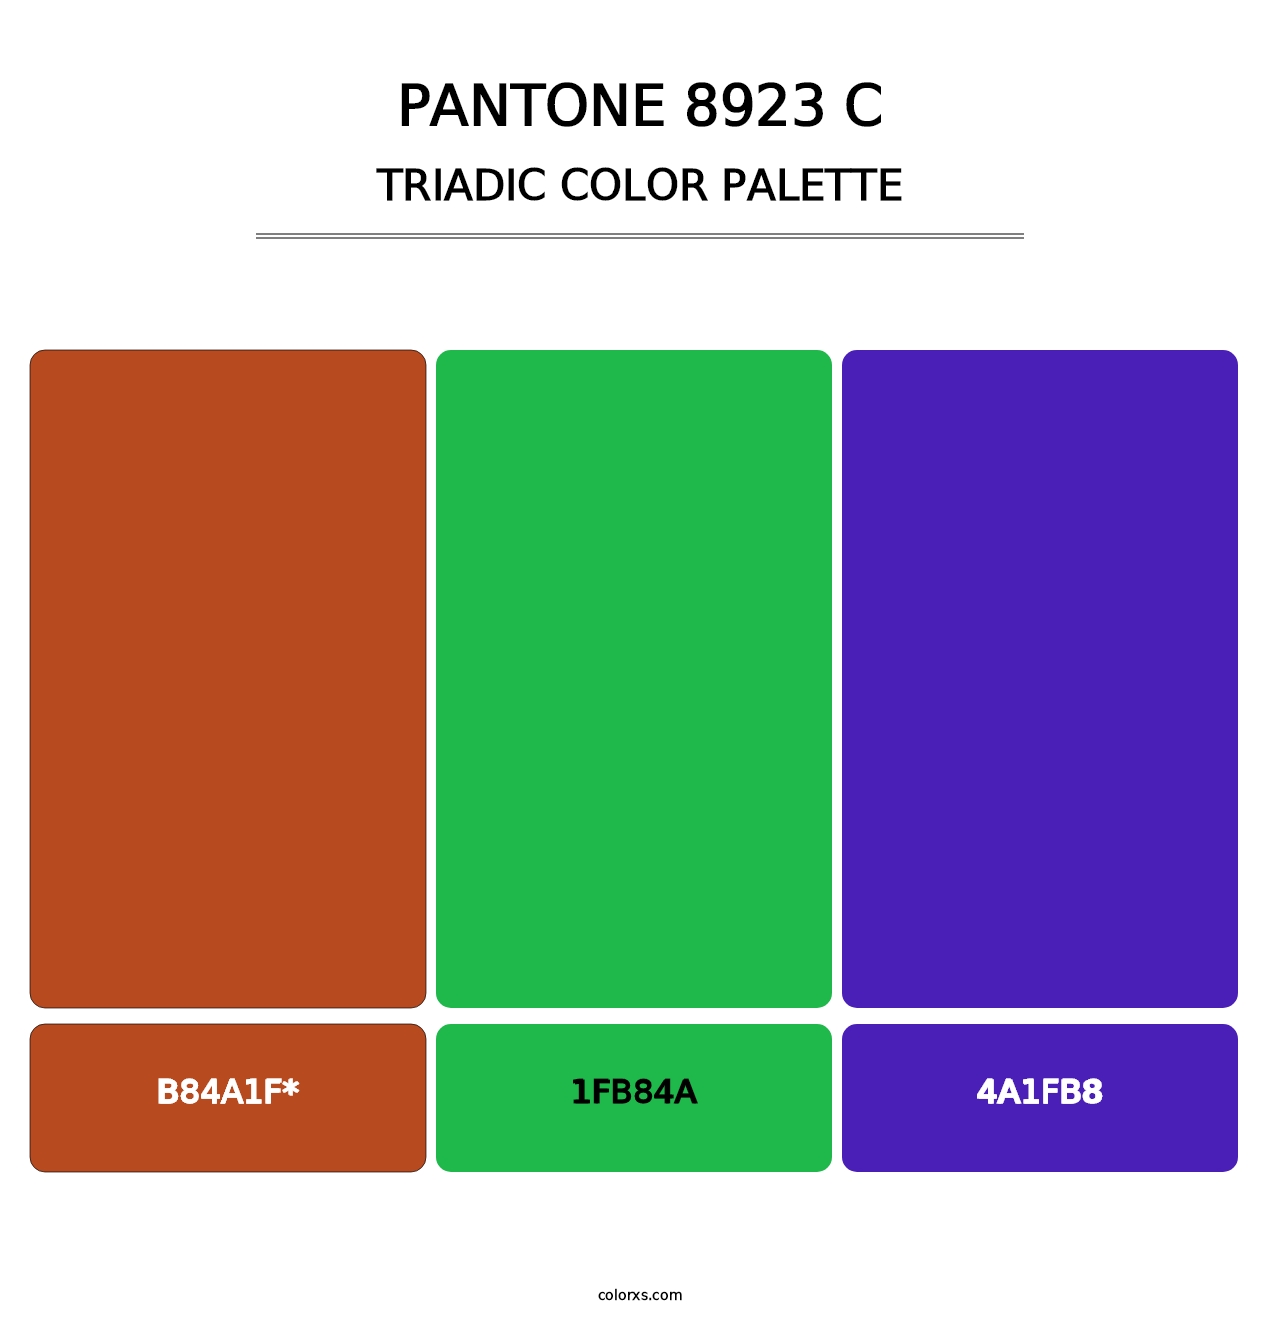 PANTONE 8923 C - Triadic Color Palette